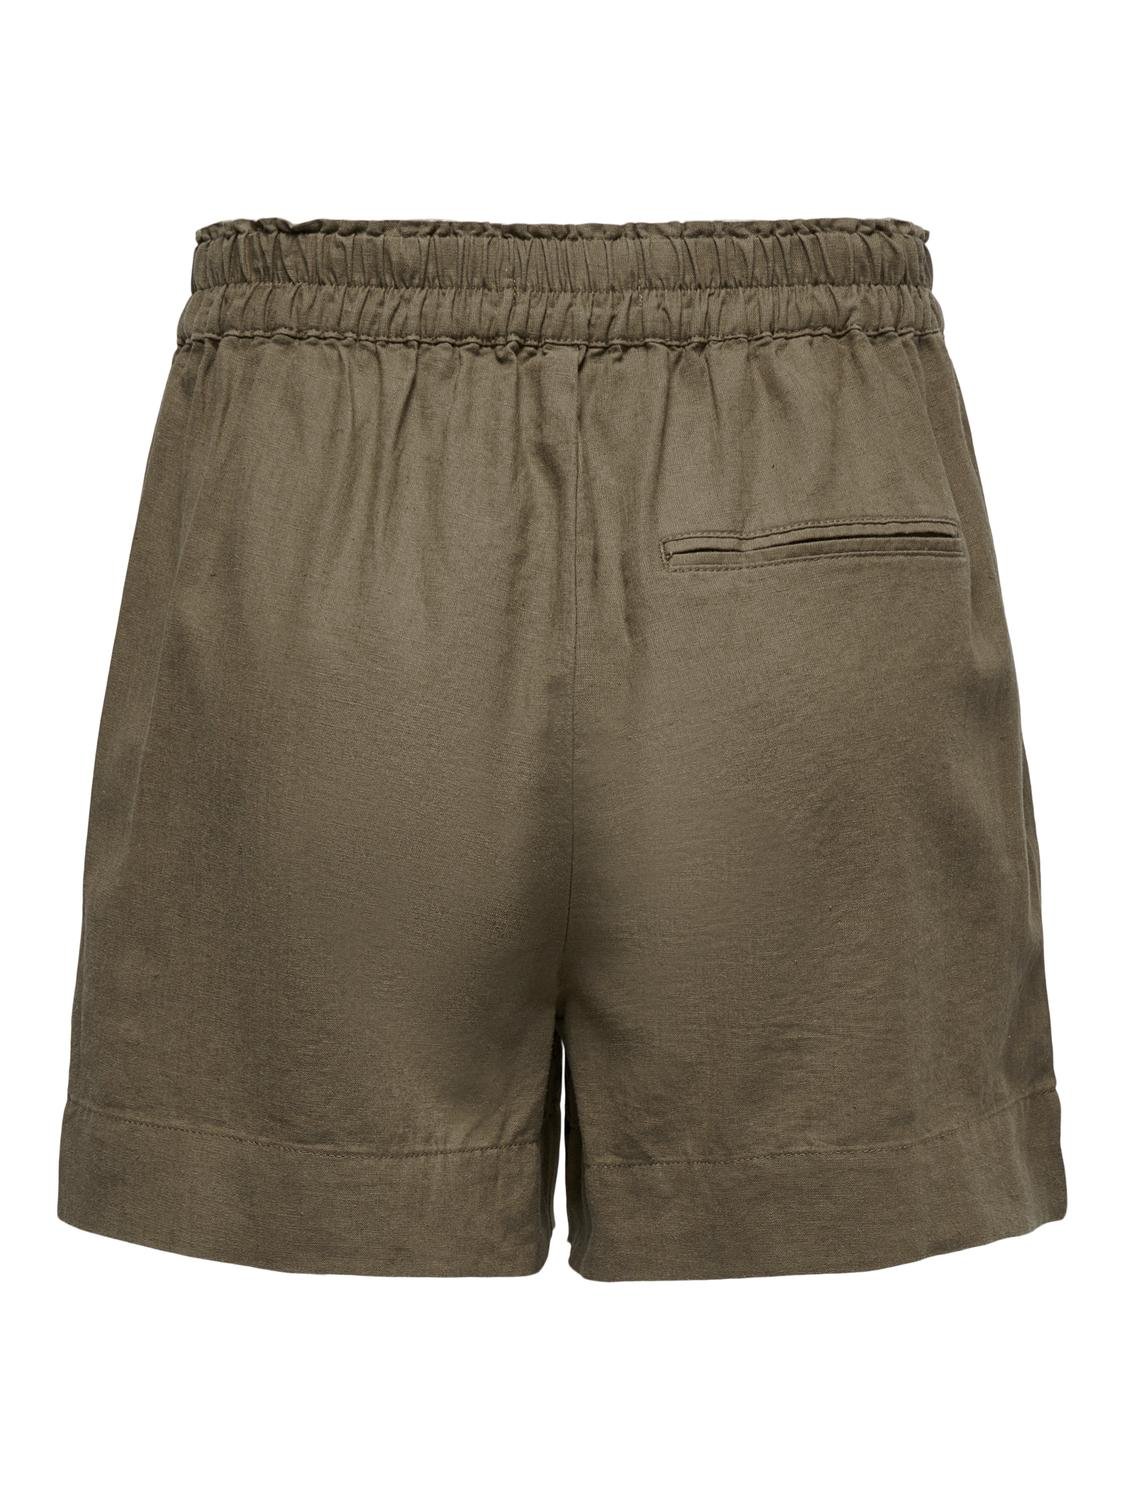 ONLY High waisted linen blend Shorts -Cub - 15259587